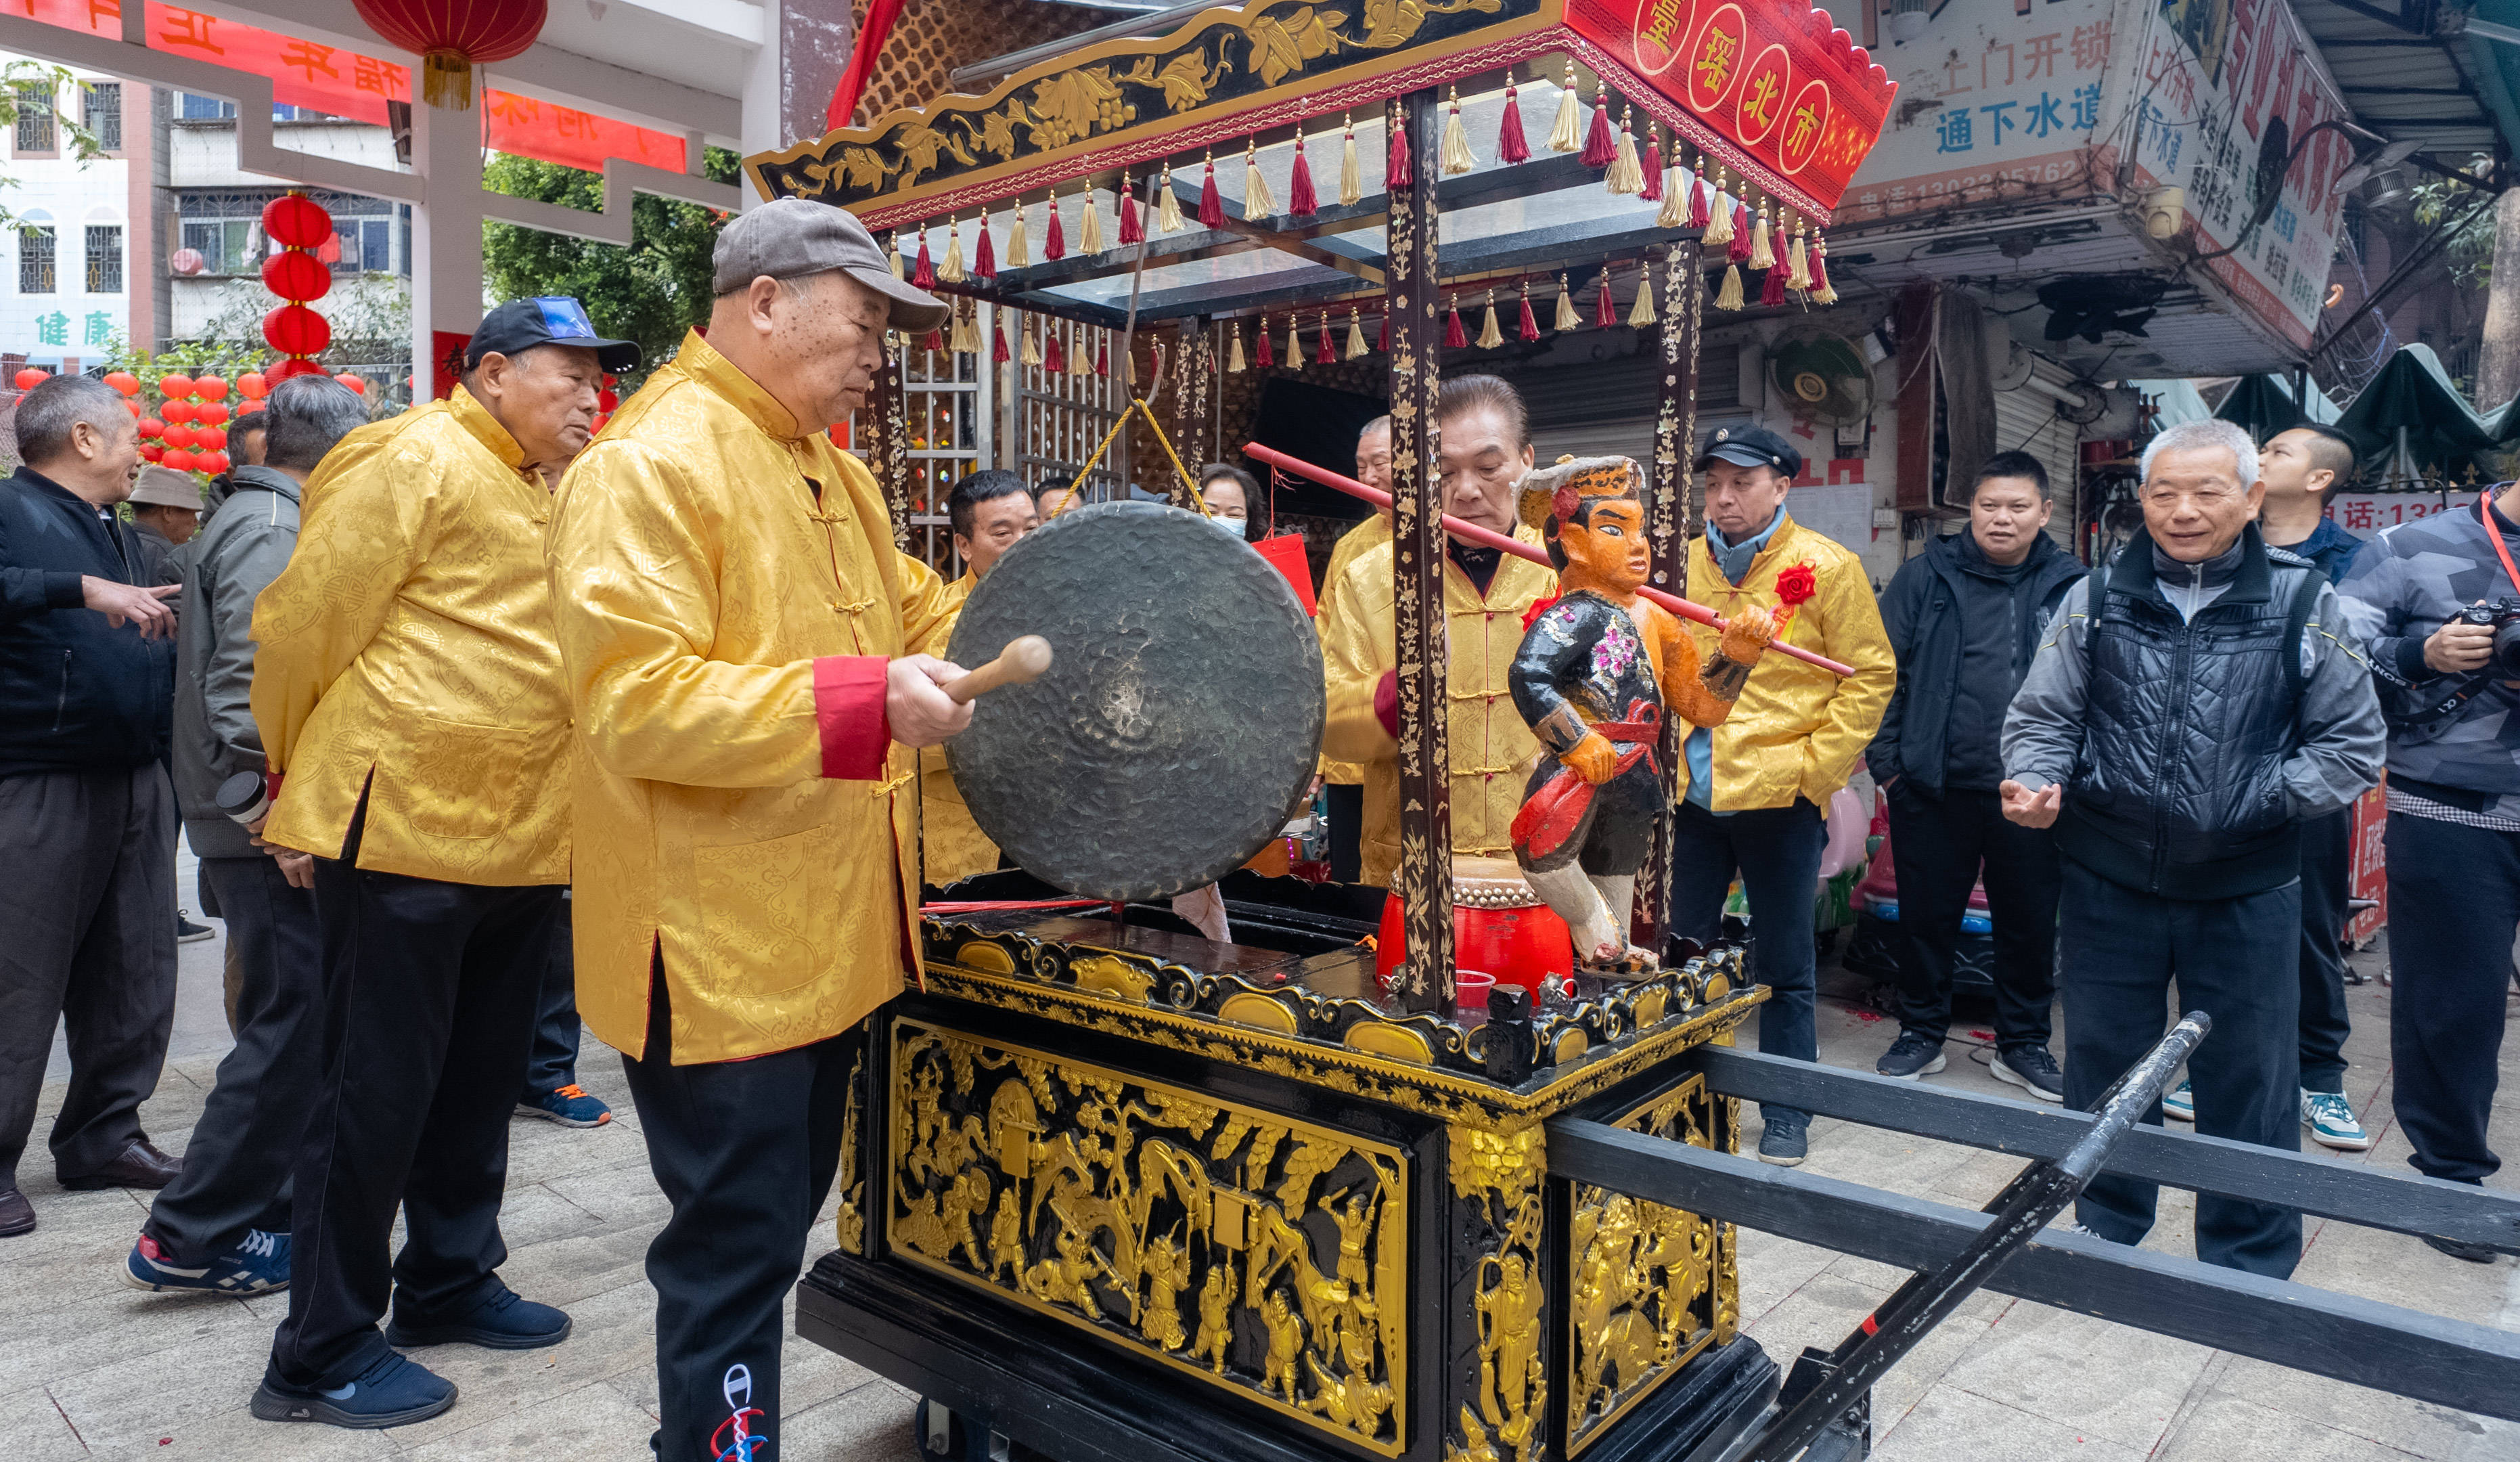 据村里老人介绍,瑶台村的八音锣鼓柜已有百年历史,且主体的四根柱子